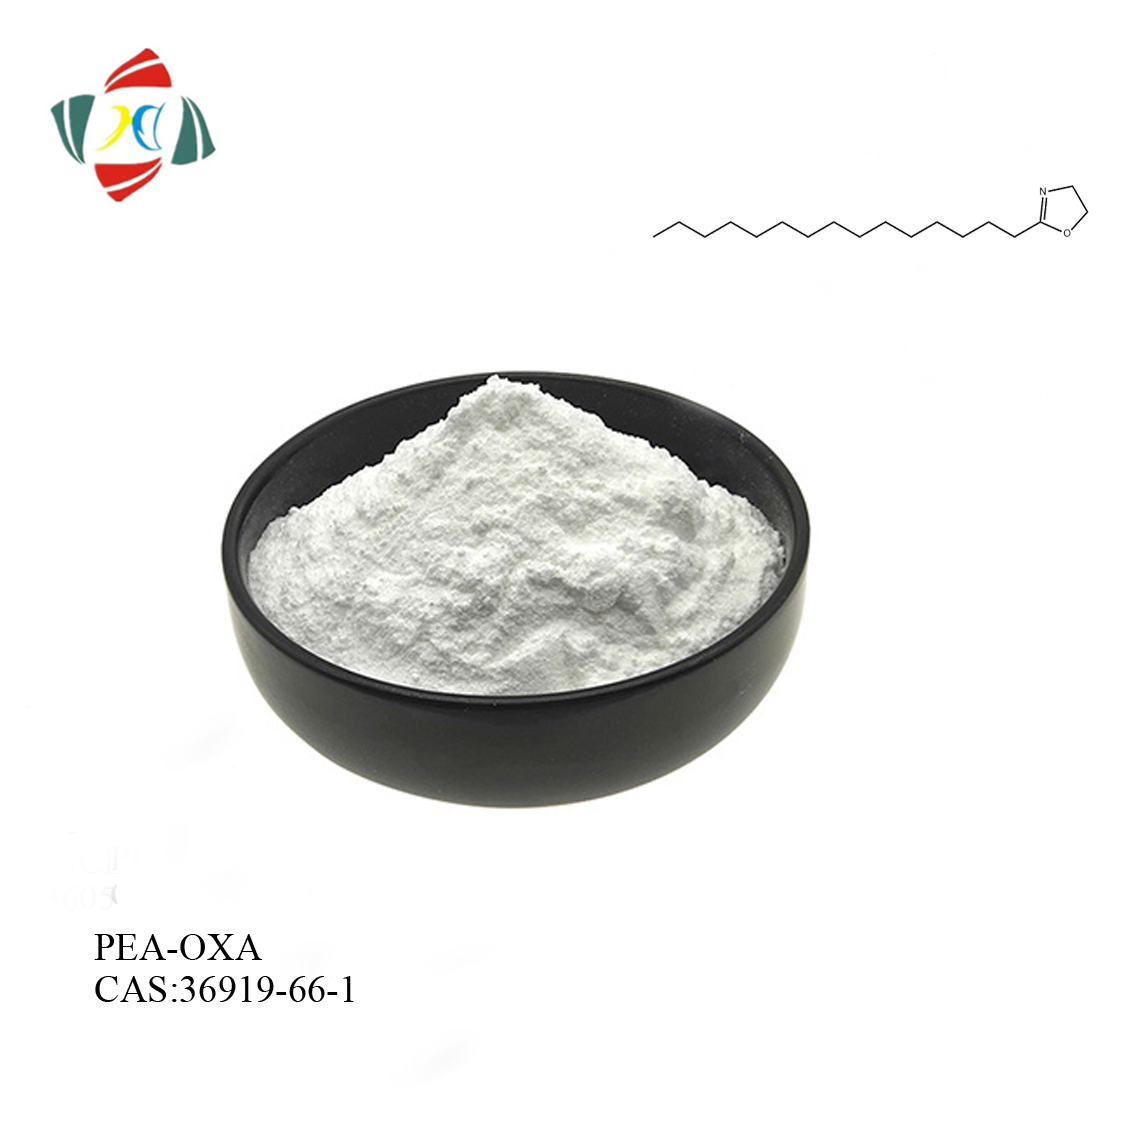 98% N-Palmitoyléthanolamine-oxazoline (PEA-OXA) CAS 36919-66-1